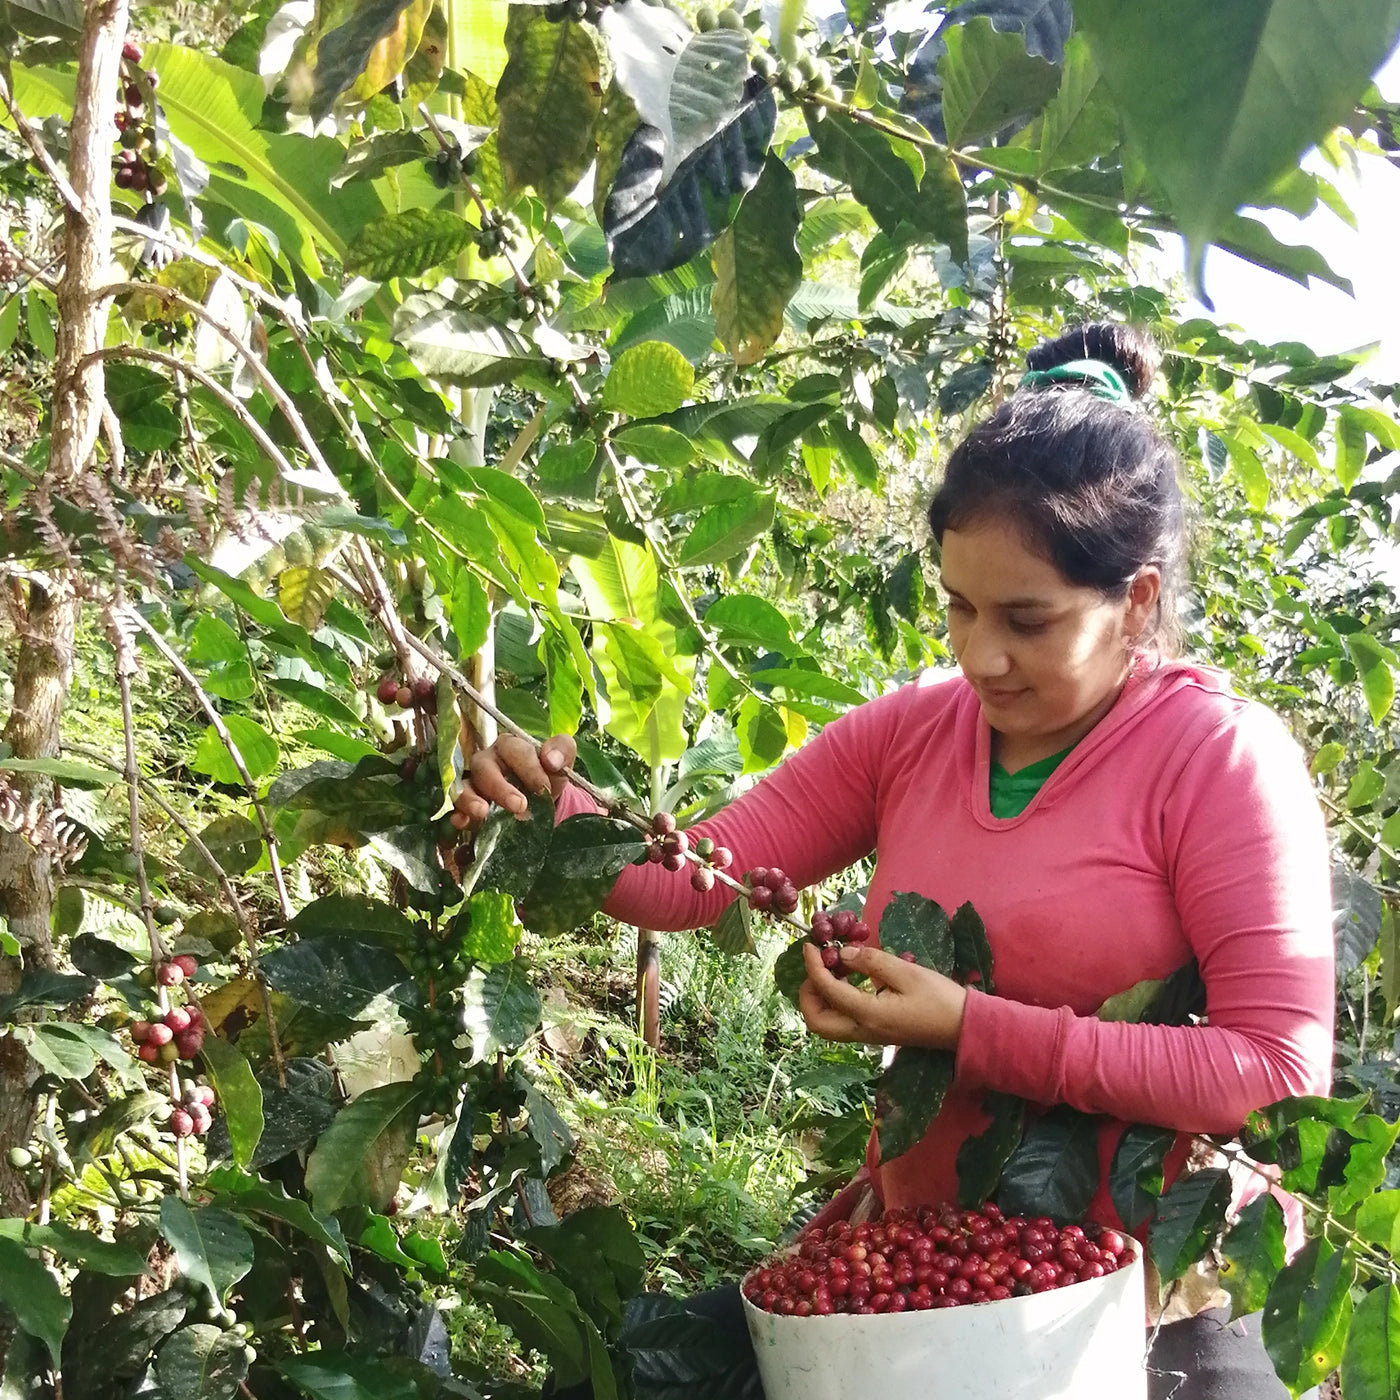 kaffefarmer plukker kaffebær 